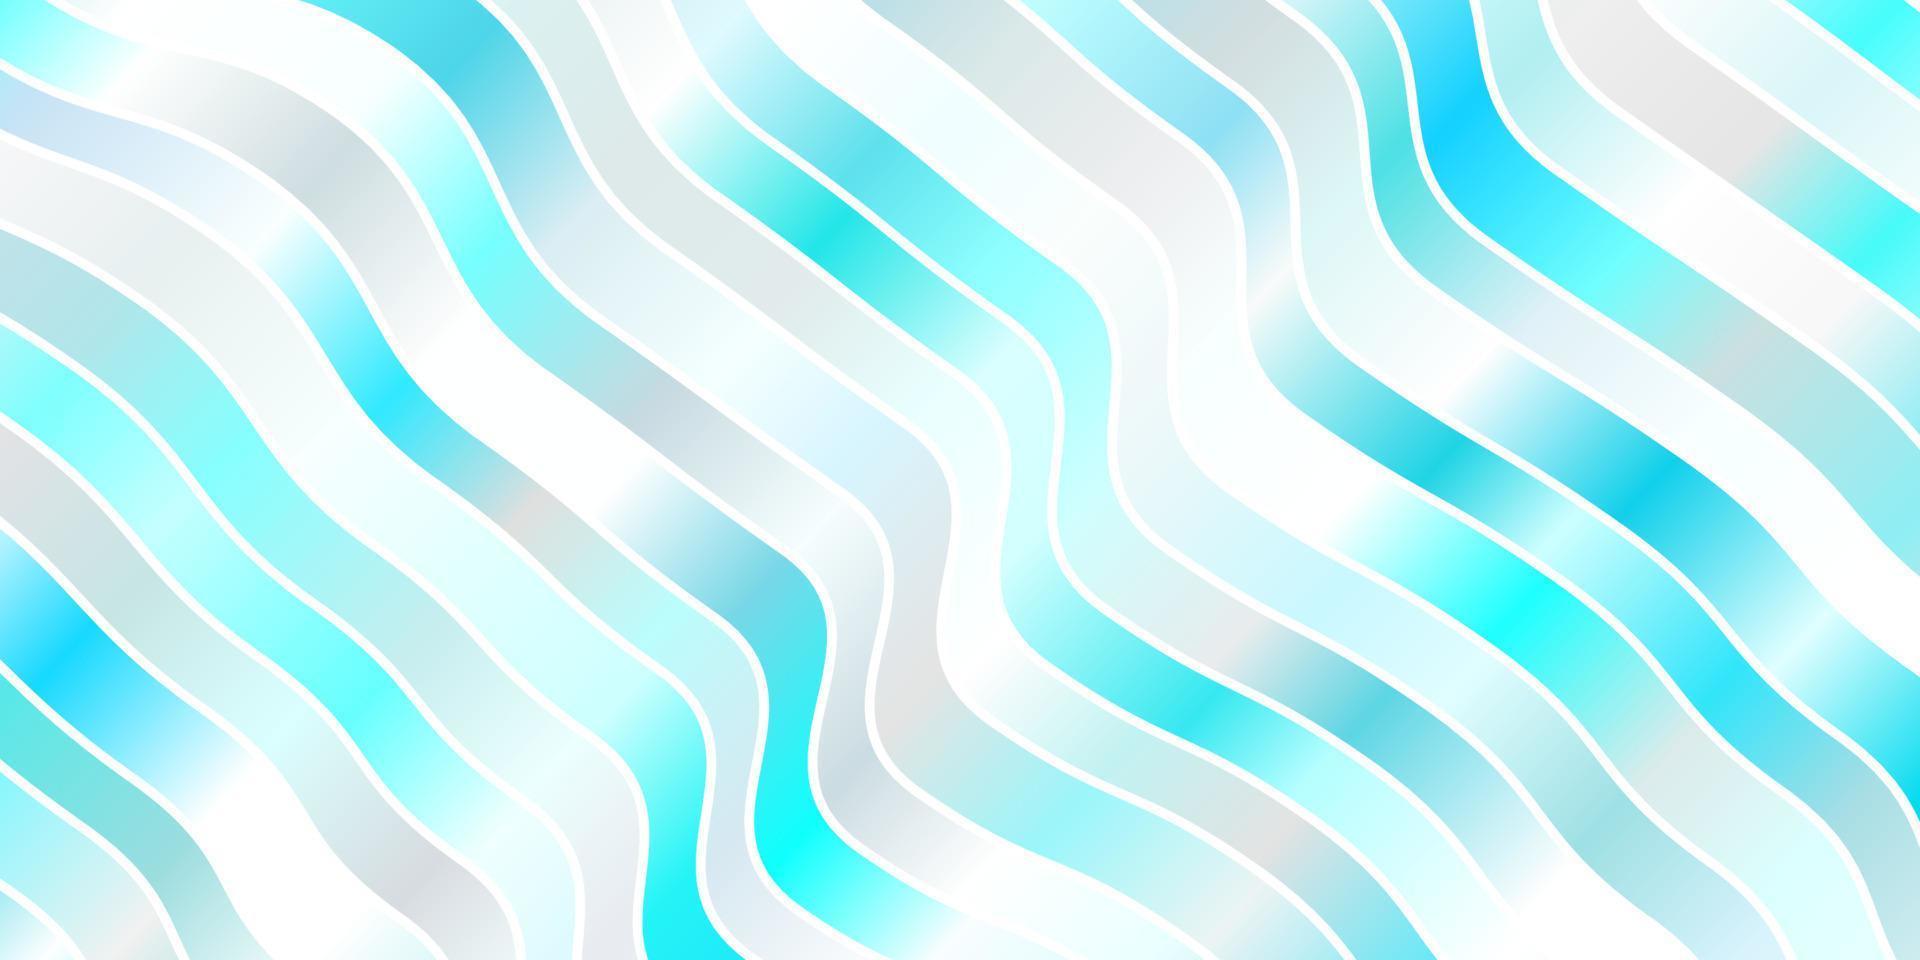 ljusrosa, blå vektorbakgrund med sneda linjer. vektor